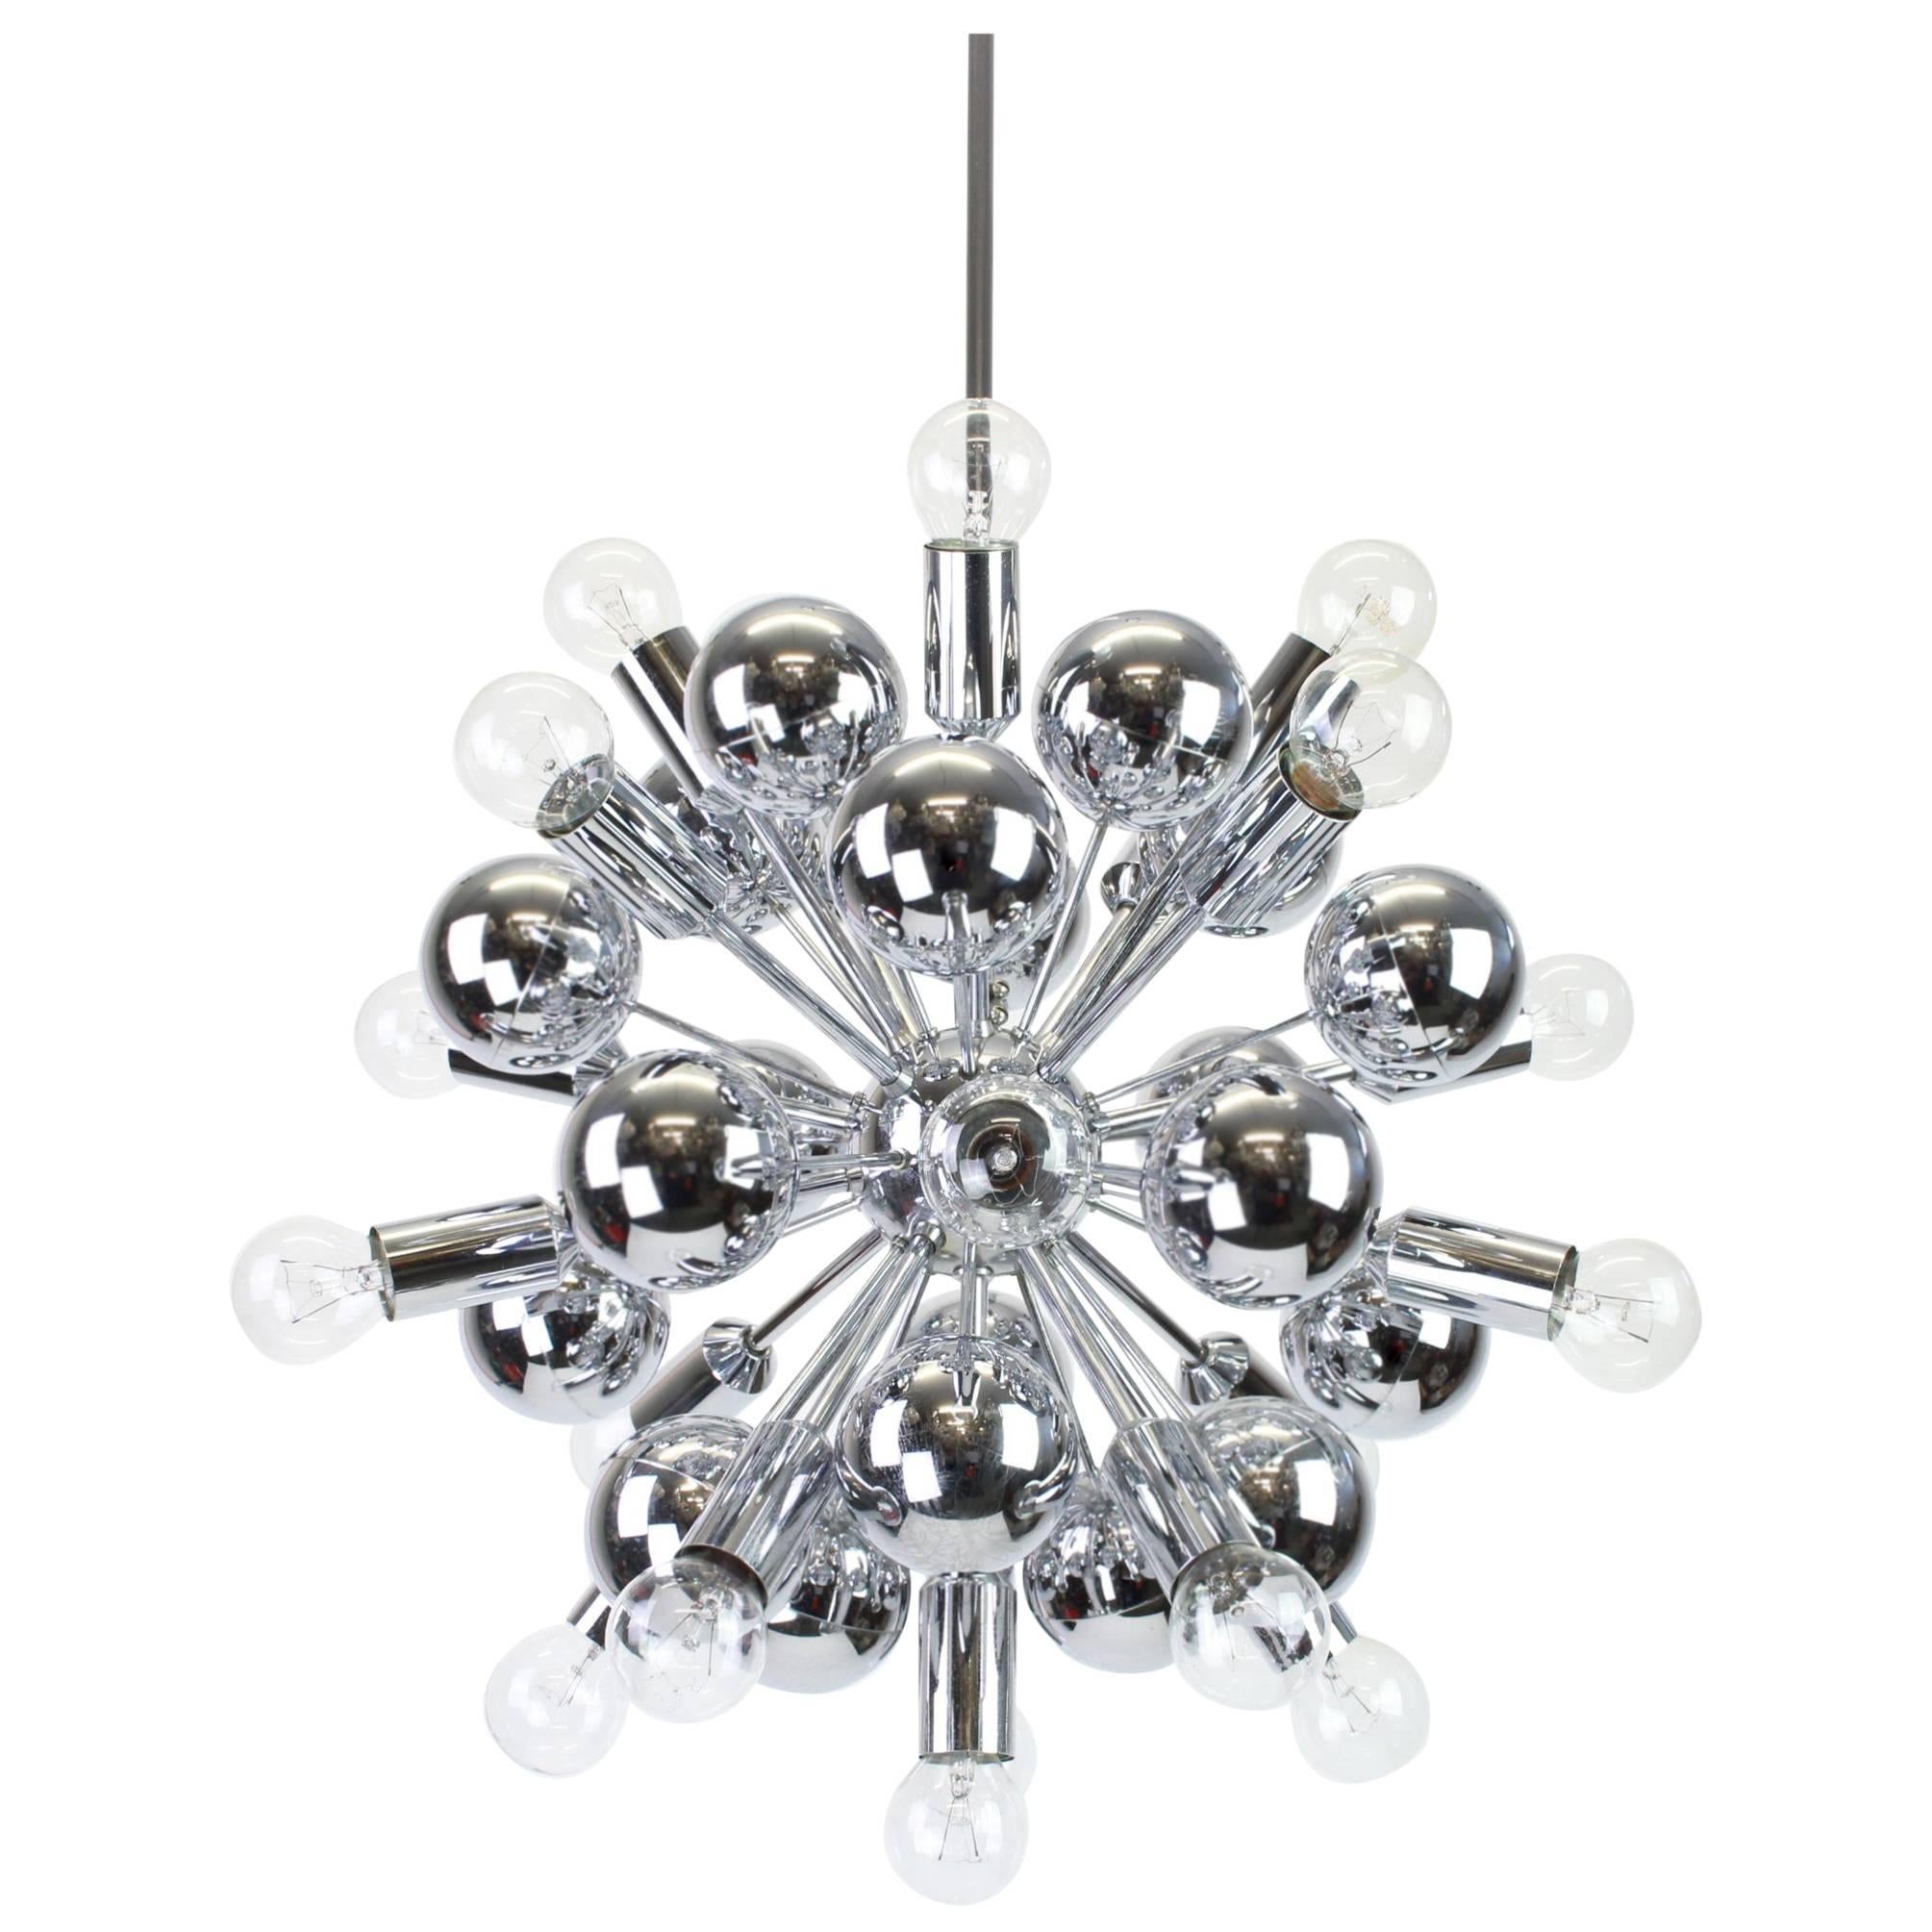 1 de 2 Lampe pendante Sputnik argentée exclusive conçue par Cosack dans les années 1970.

Douilles : Elle nécessite 21 x petites ampoules E14 et est compatible avec les normes américaines, britanniques, etc..
Dimensions :
Diamètre 16